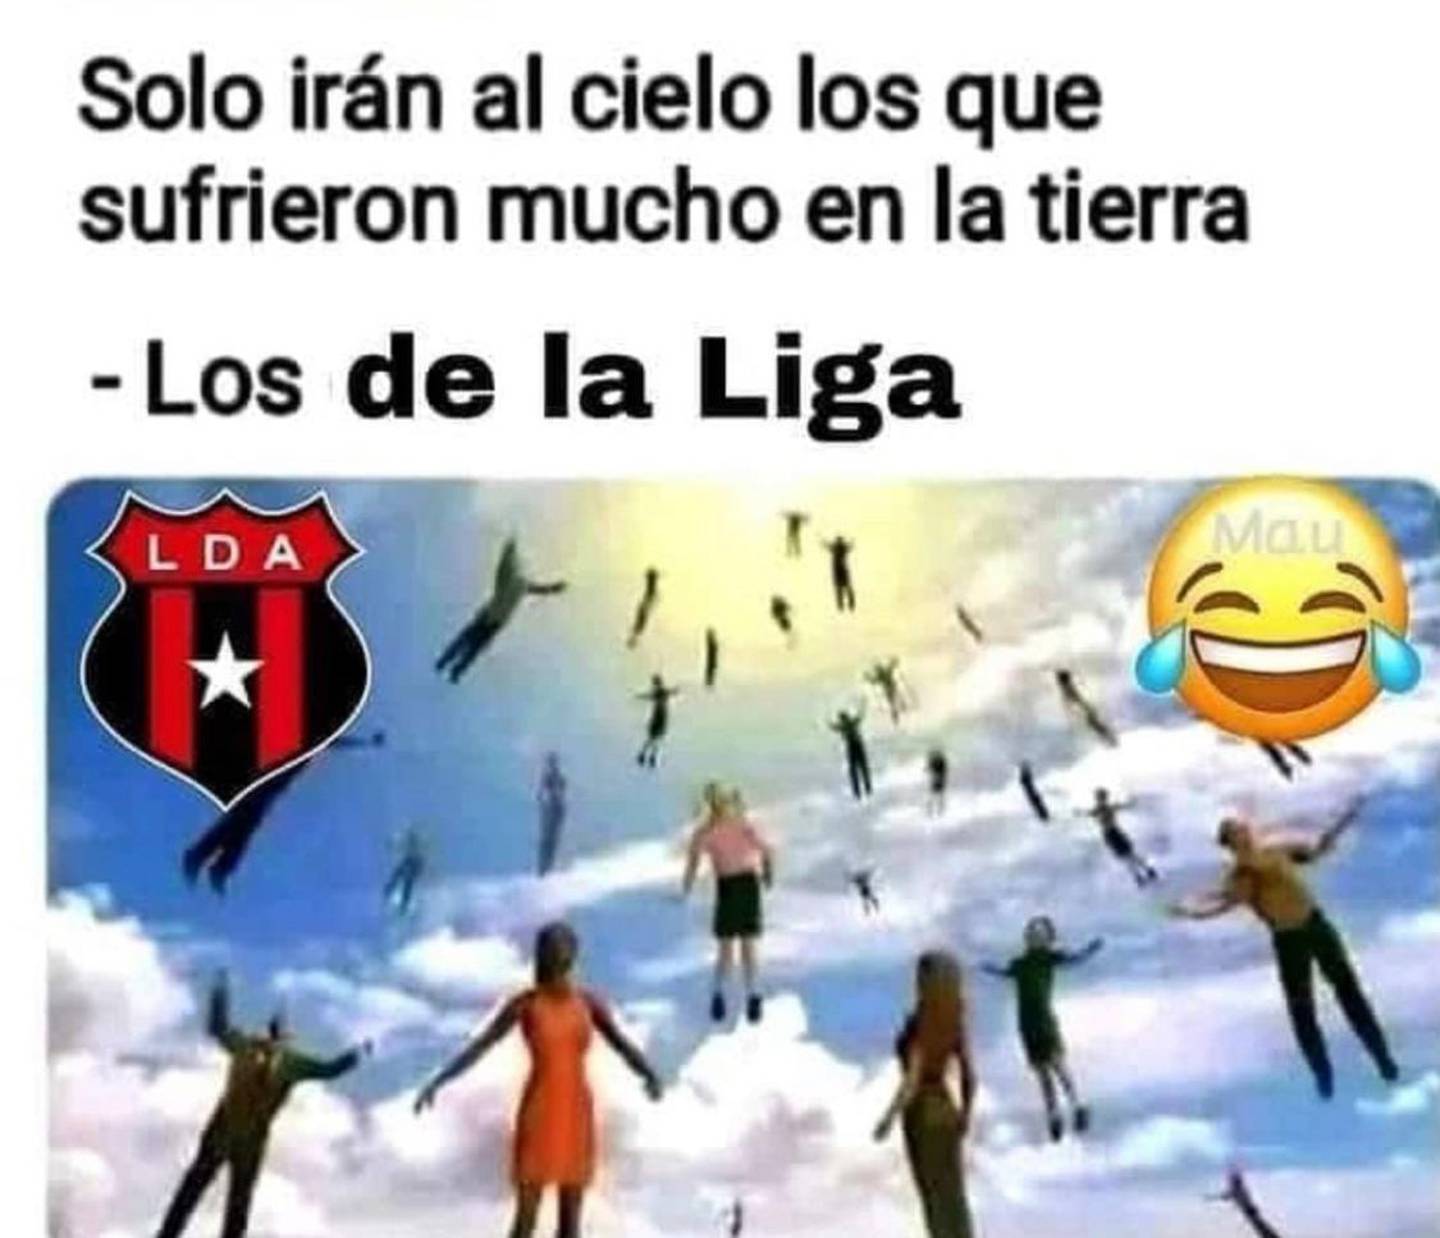 Se jugó un clásico de clásicos del fútbol costarricense entre Alajuelense y Saprissa. Los morados ganaron el partido 2-0 y a partir del triunfo morado comenzaron a hervir en las redes sociales los tradicionales memes.